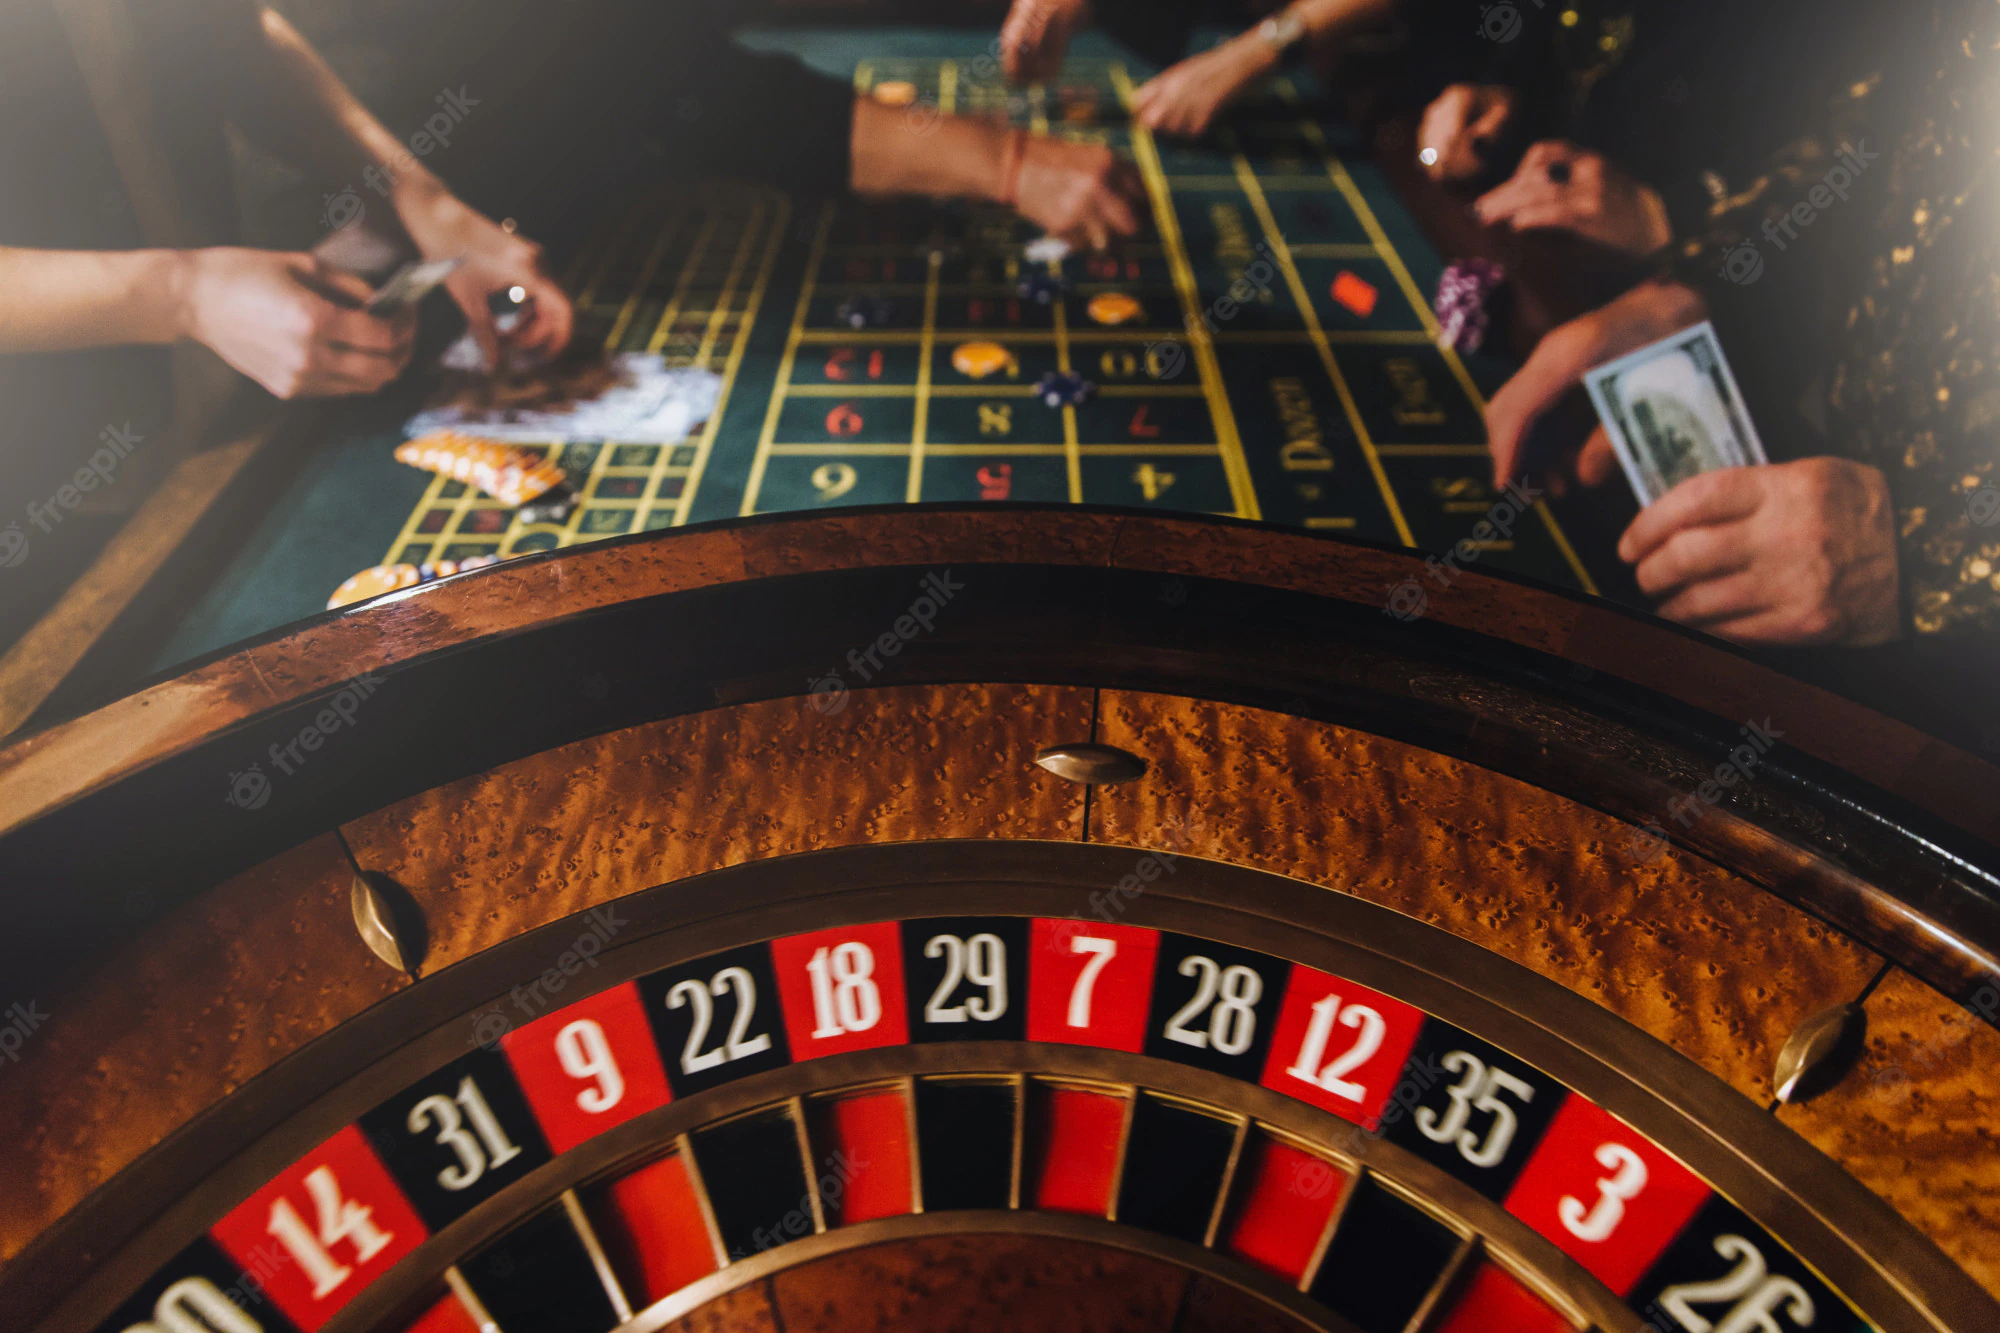 Online-Casino-Regeln und Prozentsätze erklärt